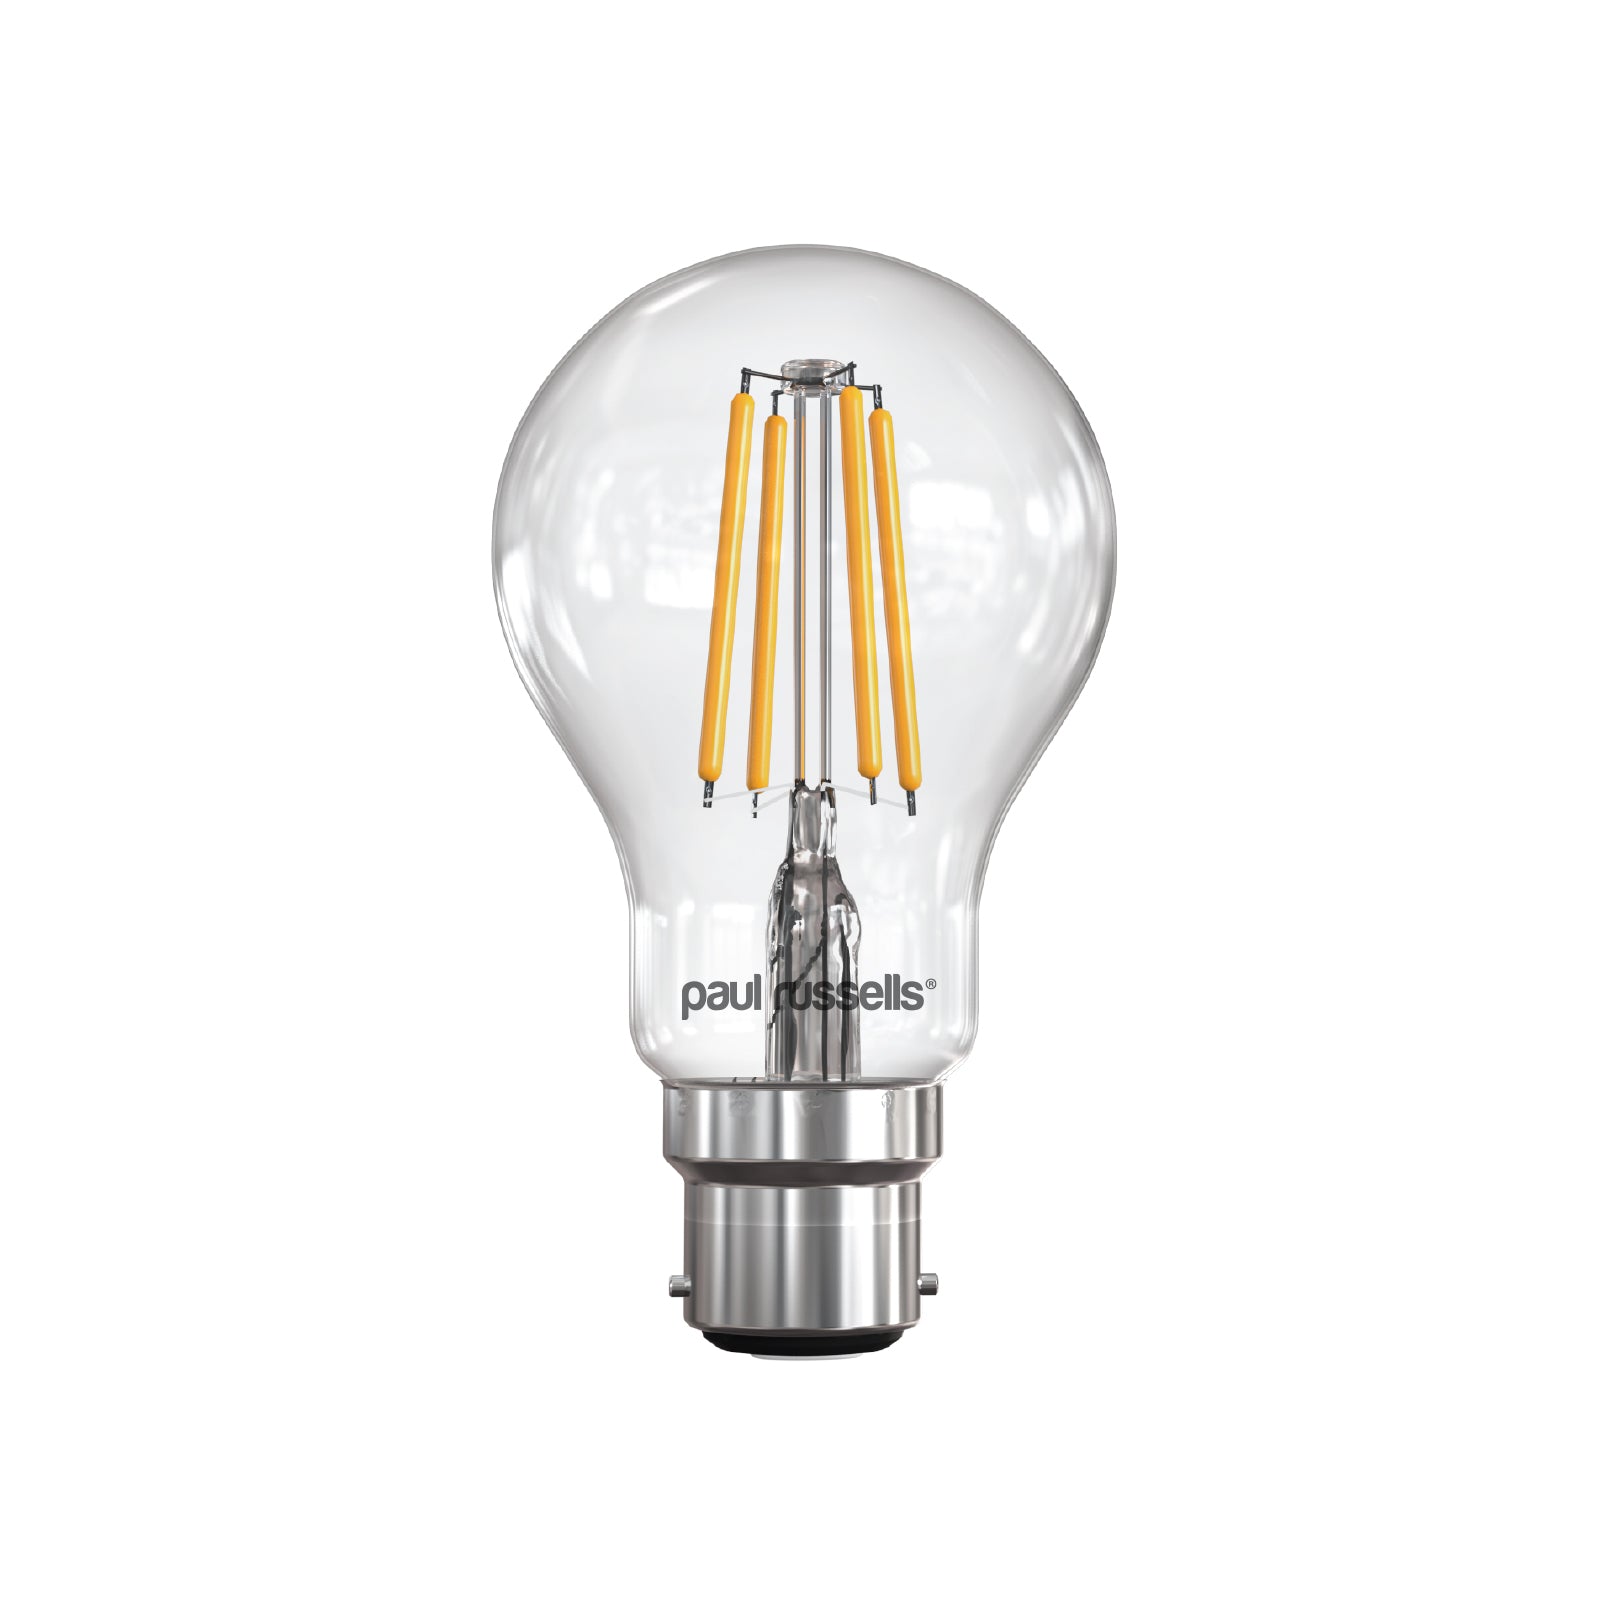 LED Filament GLS 7W (60w), BC/B22, 806 Lumens, Warm White(2700K), 240V